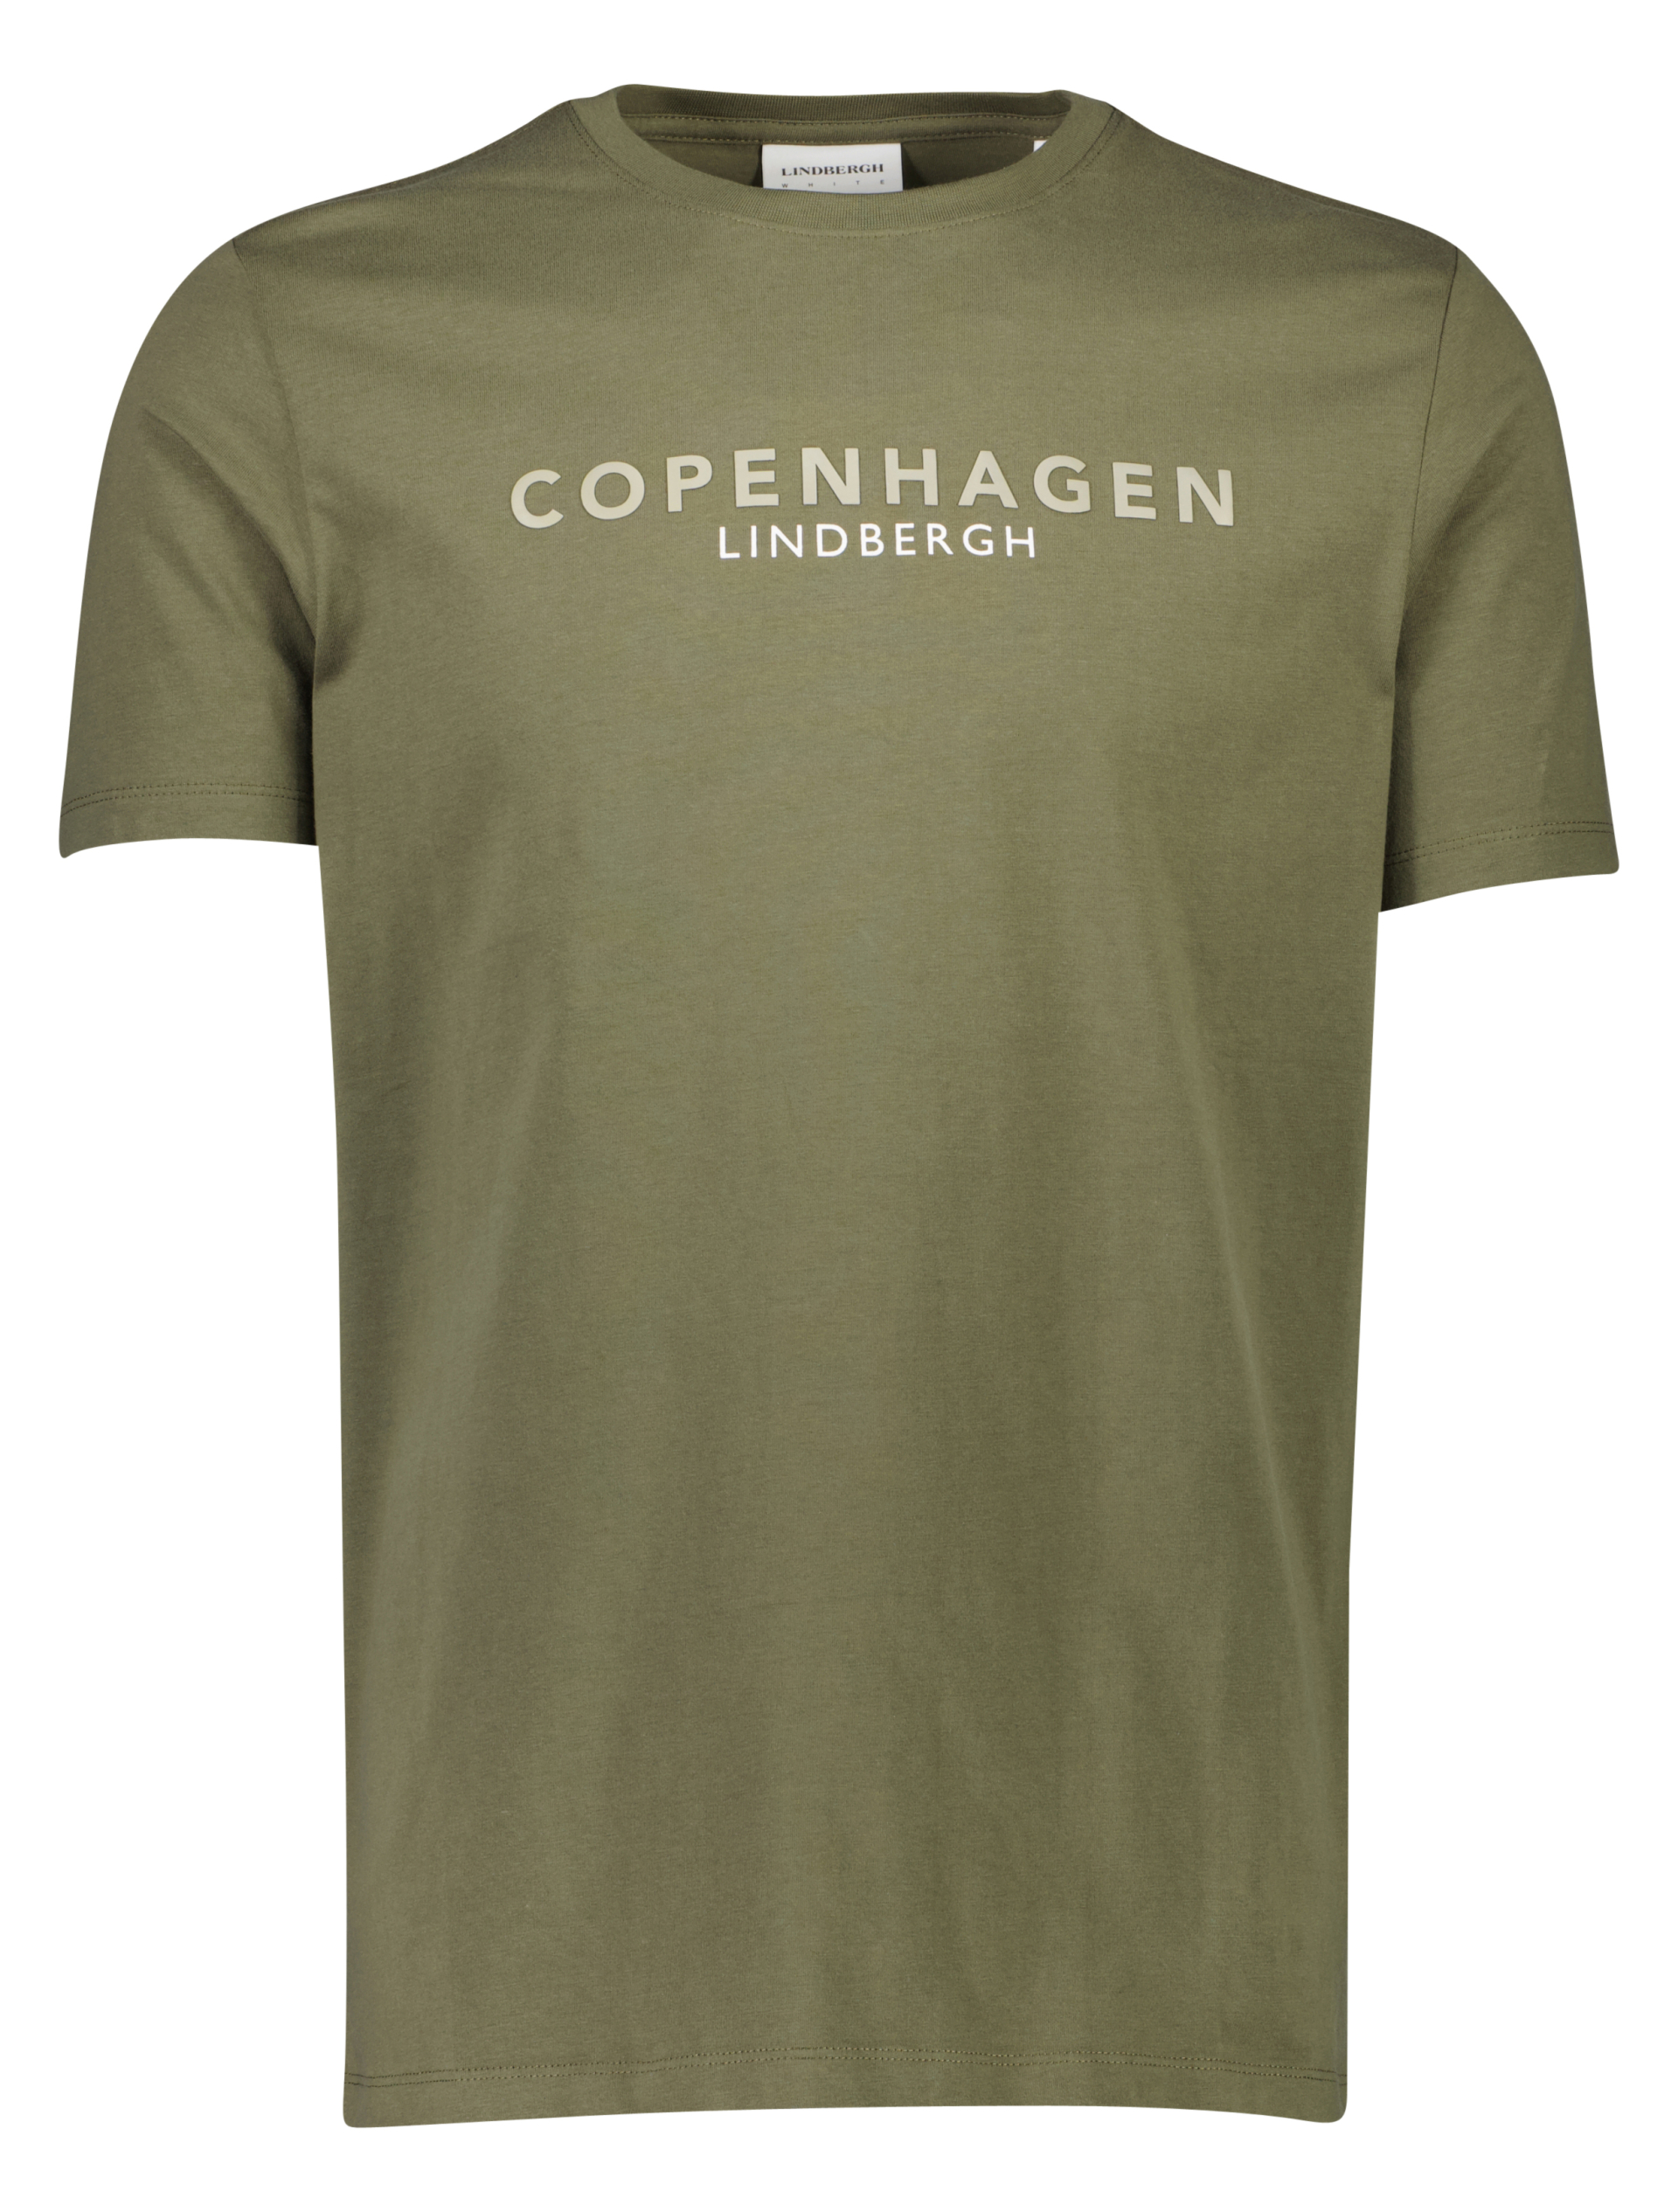 Lindbergh T-shirt grøn / army 123